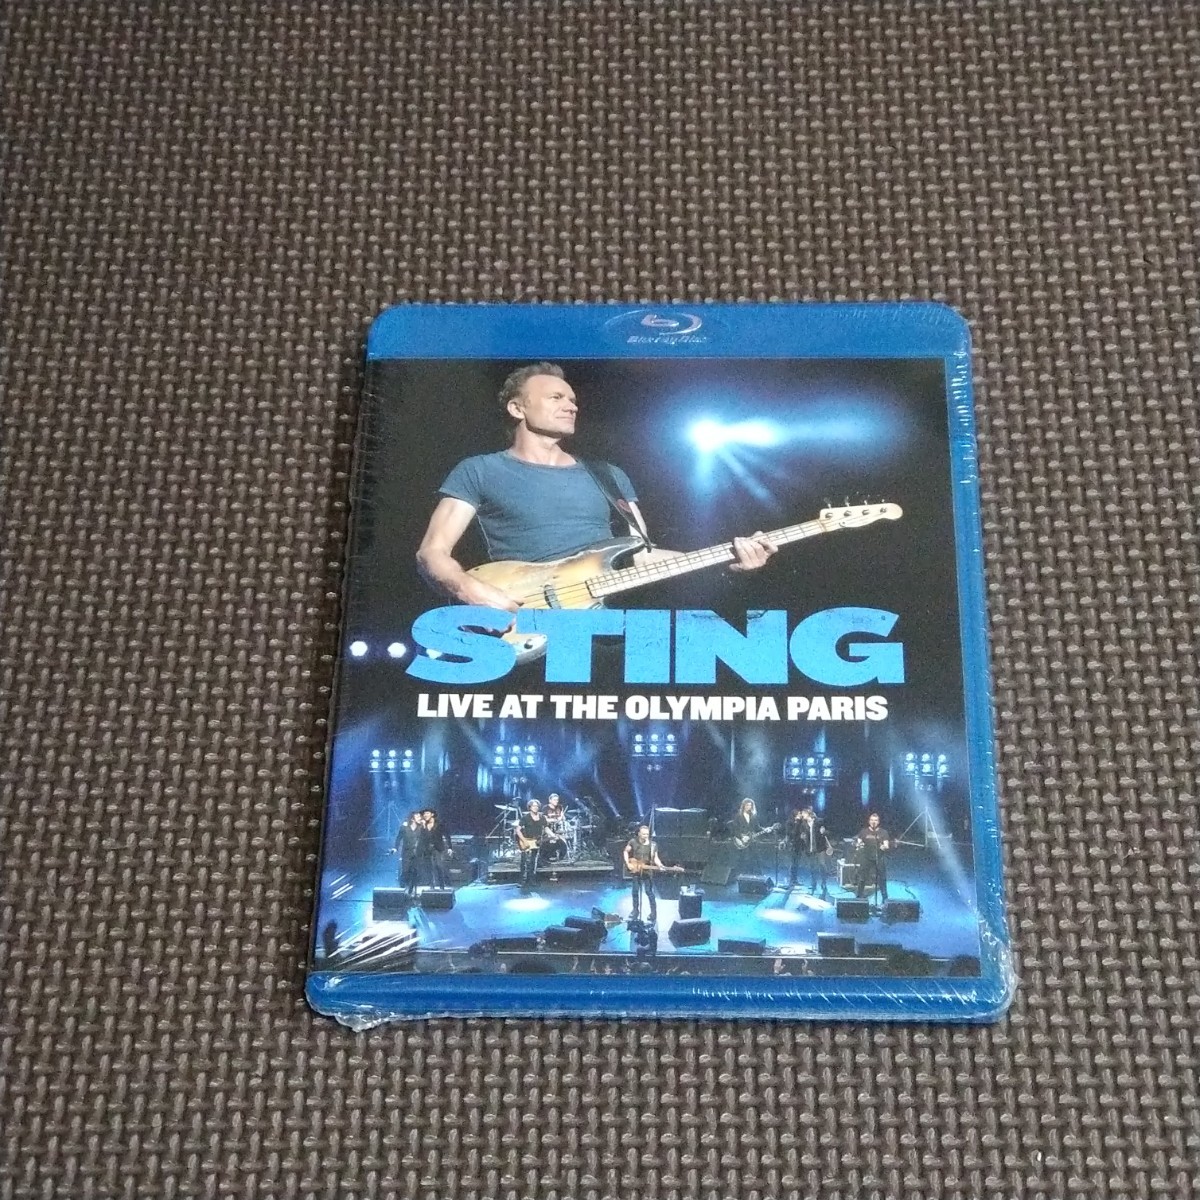  новый товар быстрое решение стойка ng жить * at * Ora n Piaa, Париж Sting Live at the Olympia Paris Blu-ray